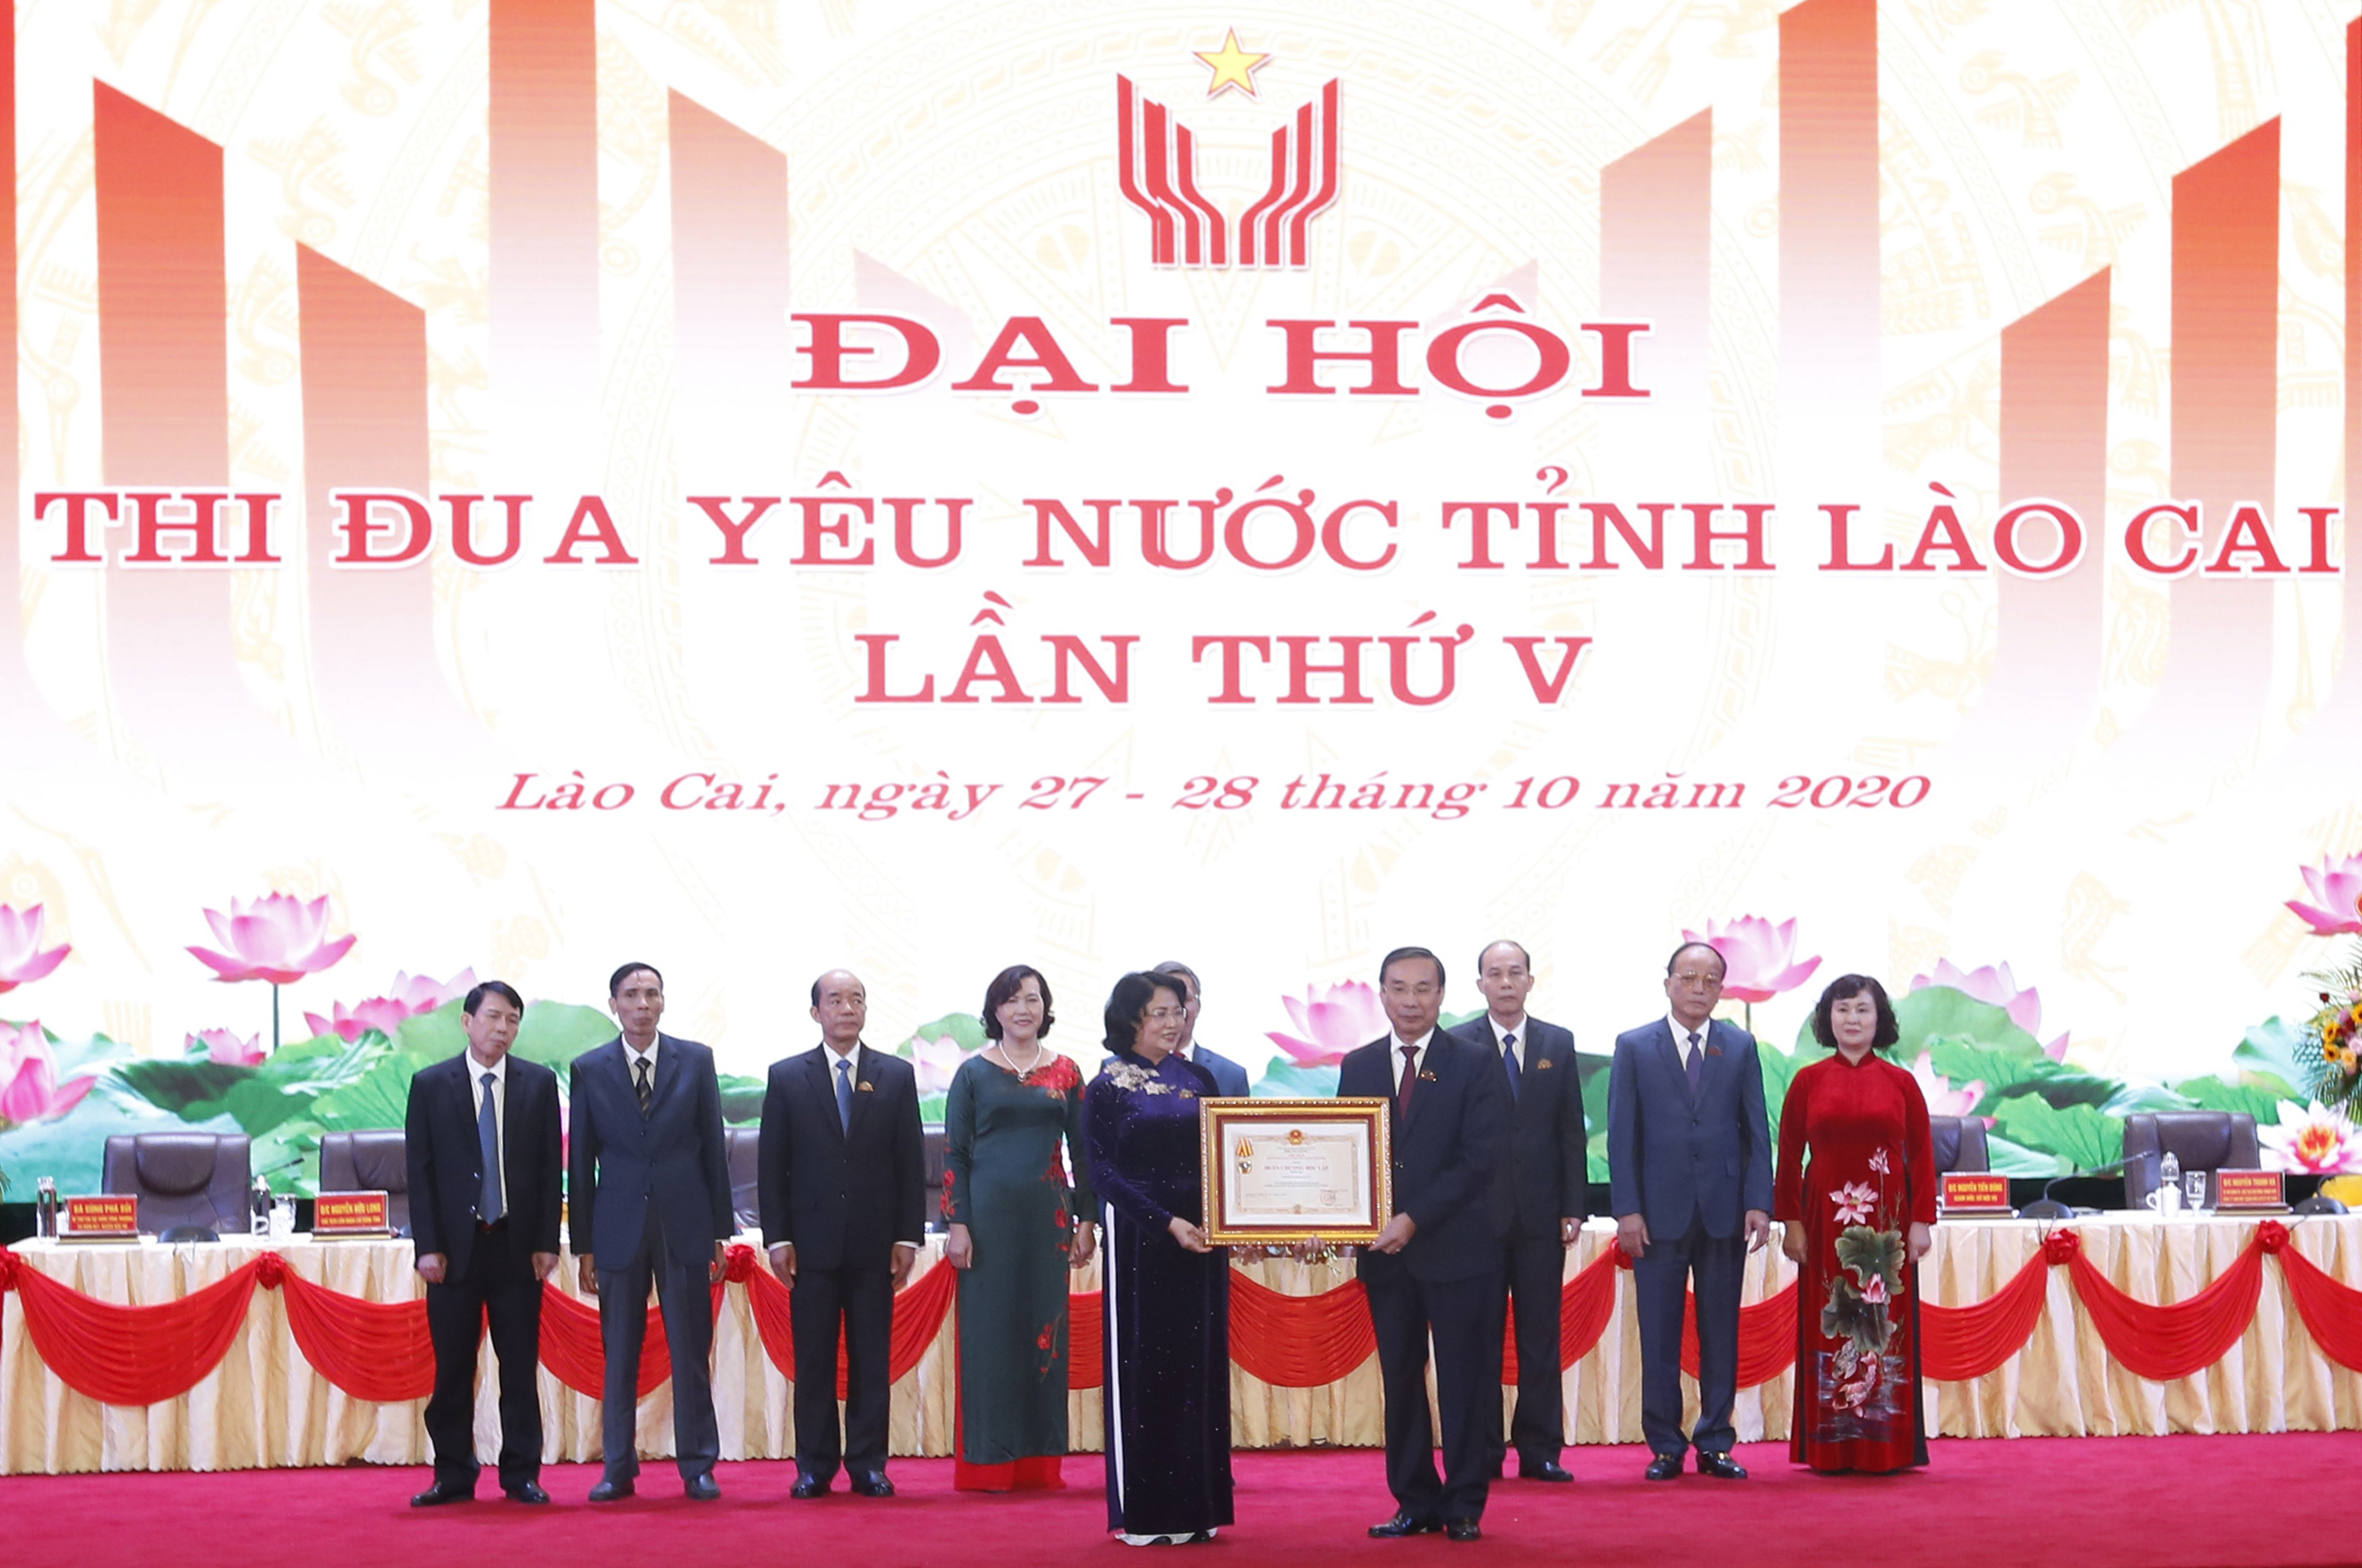 Phó Chủ tịch nước Đặng Thị Ngọc Thịnh trao Huân chương Độc lập hạng Ba cho Sở Nội vụ Lào Cai tại Đại hội Thi đua yêu nước tỉnh Lào Cai lần thứ V (Ảnh: ĐP)